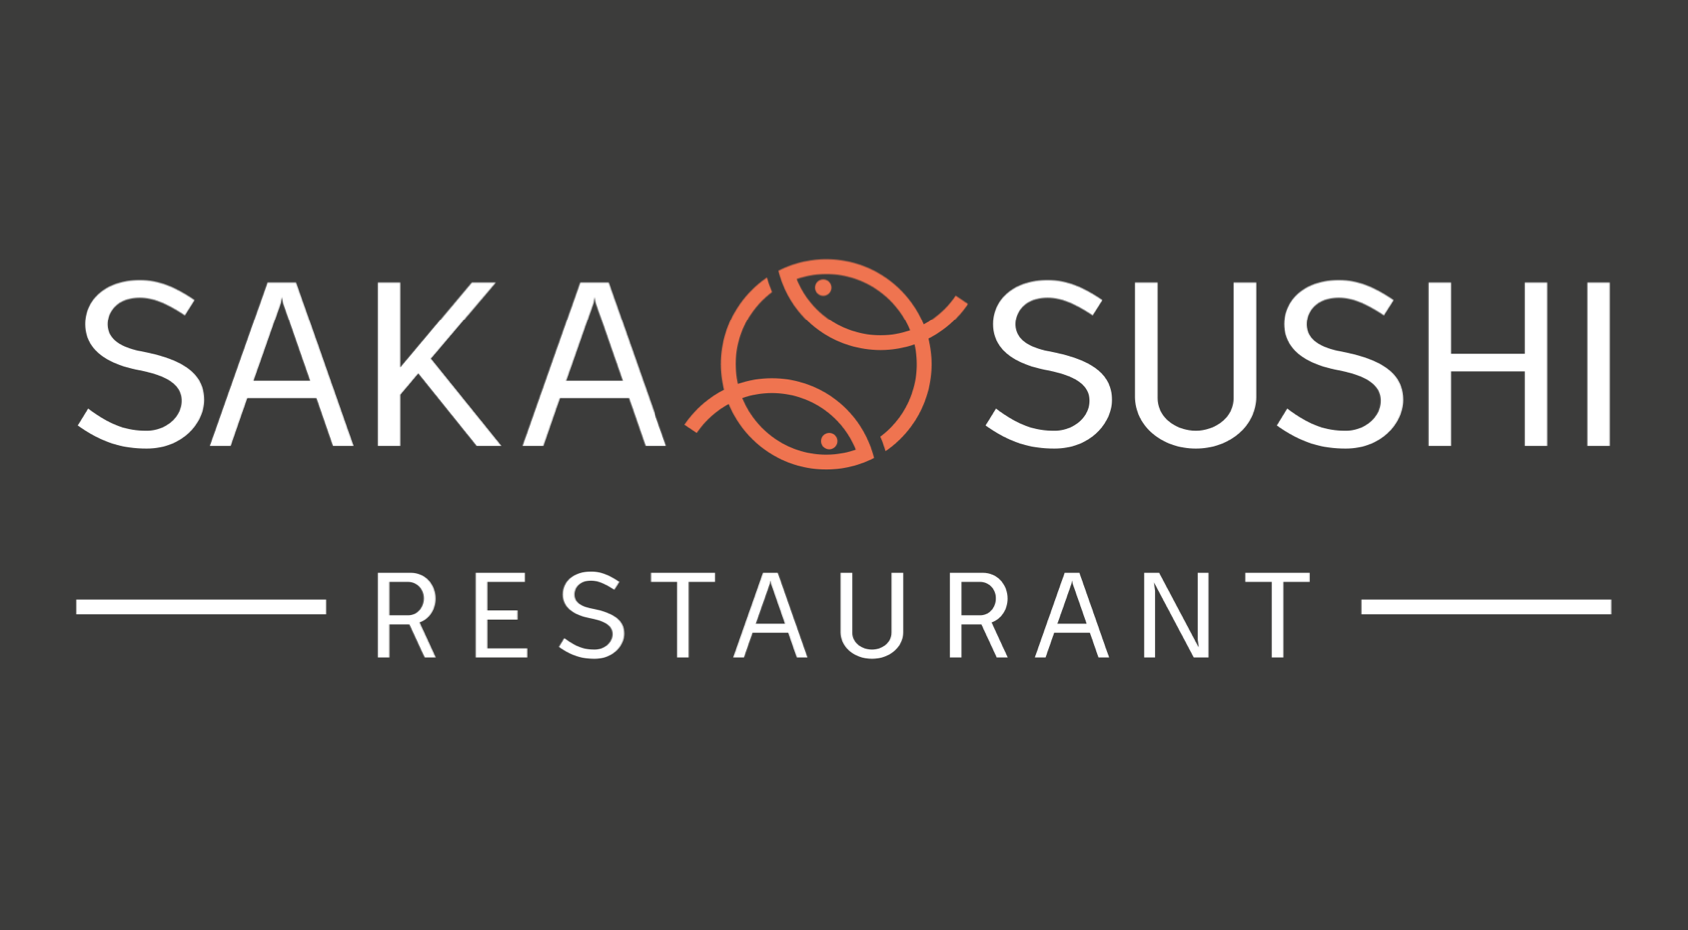 Saka sushi restaurant